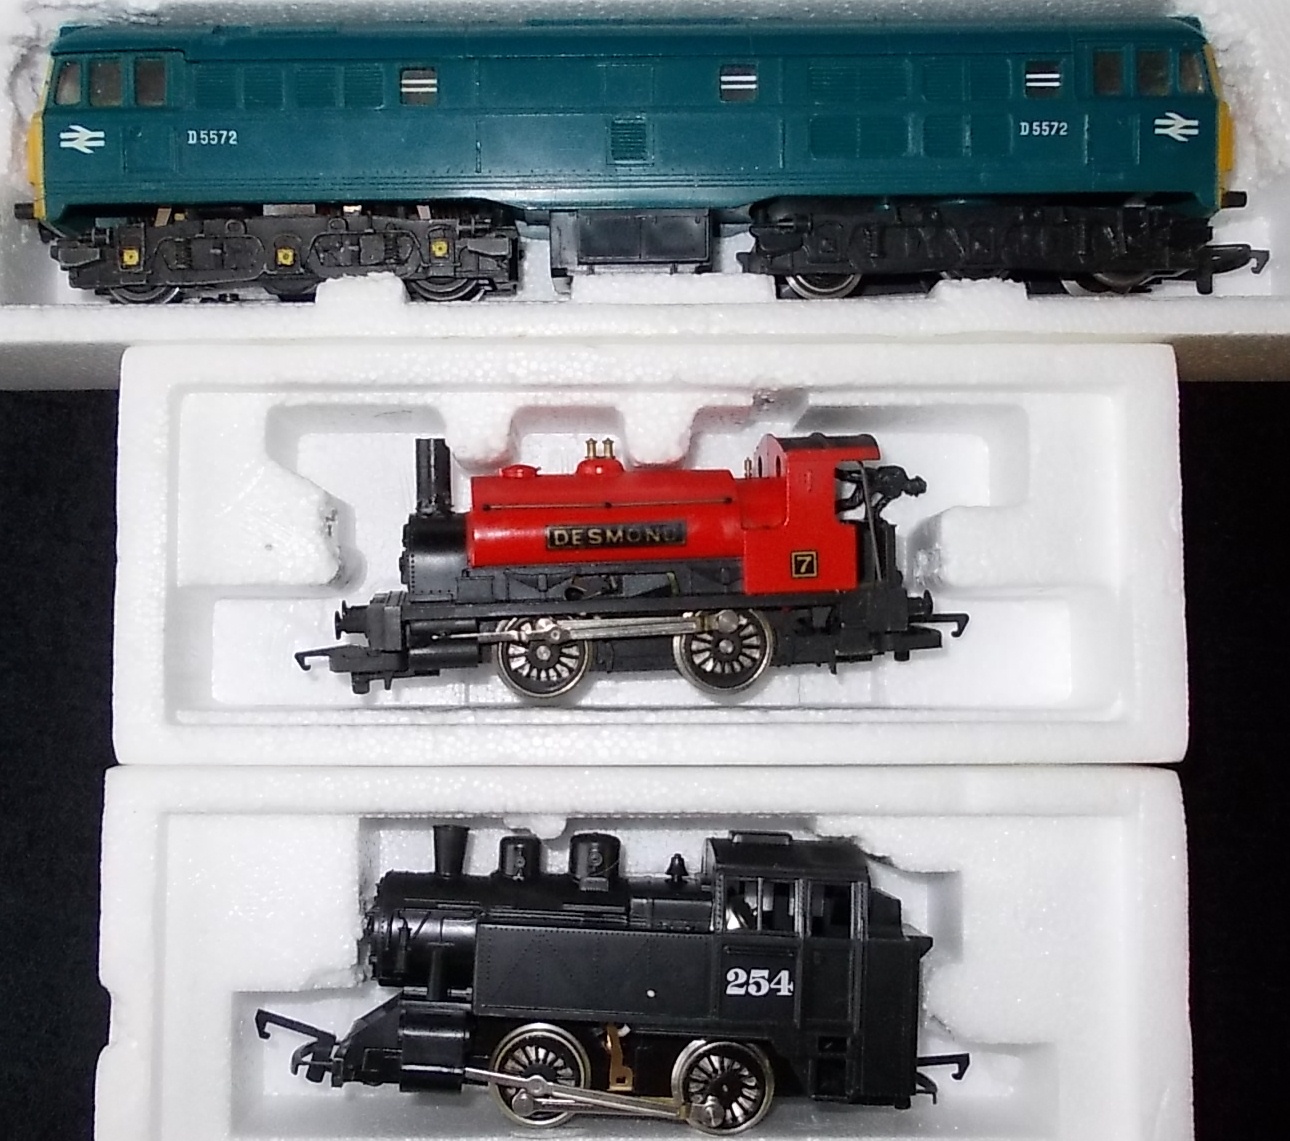 (3) Hornby Railways. 0-4-0T loco. 254, black.; 0-4-0 loco, no tender. 7 ‘Desmond’, red.; Diesel